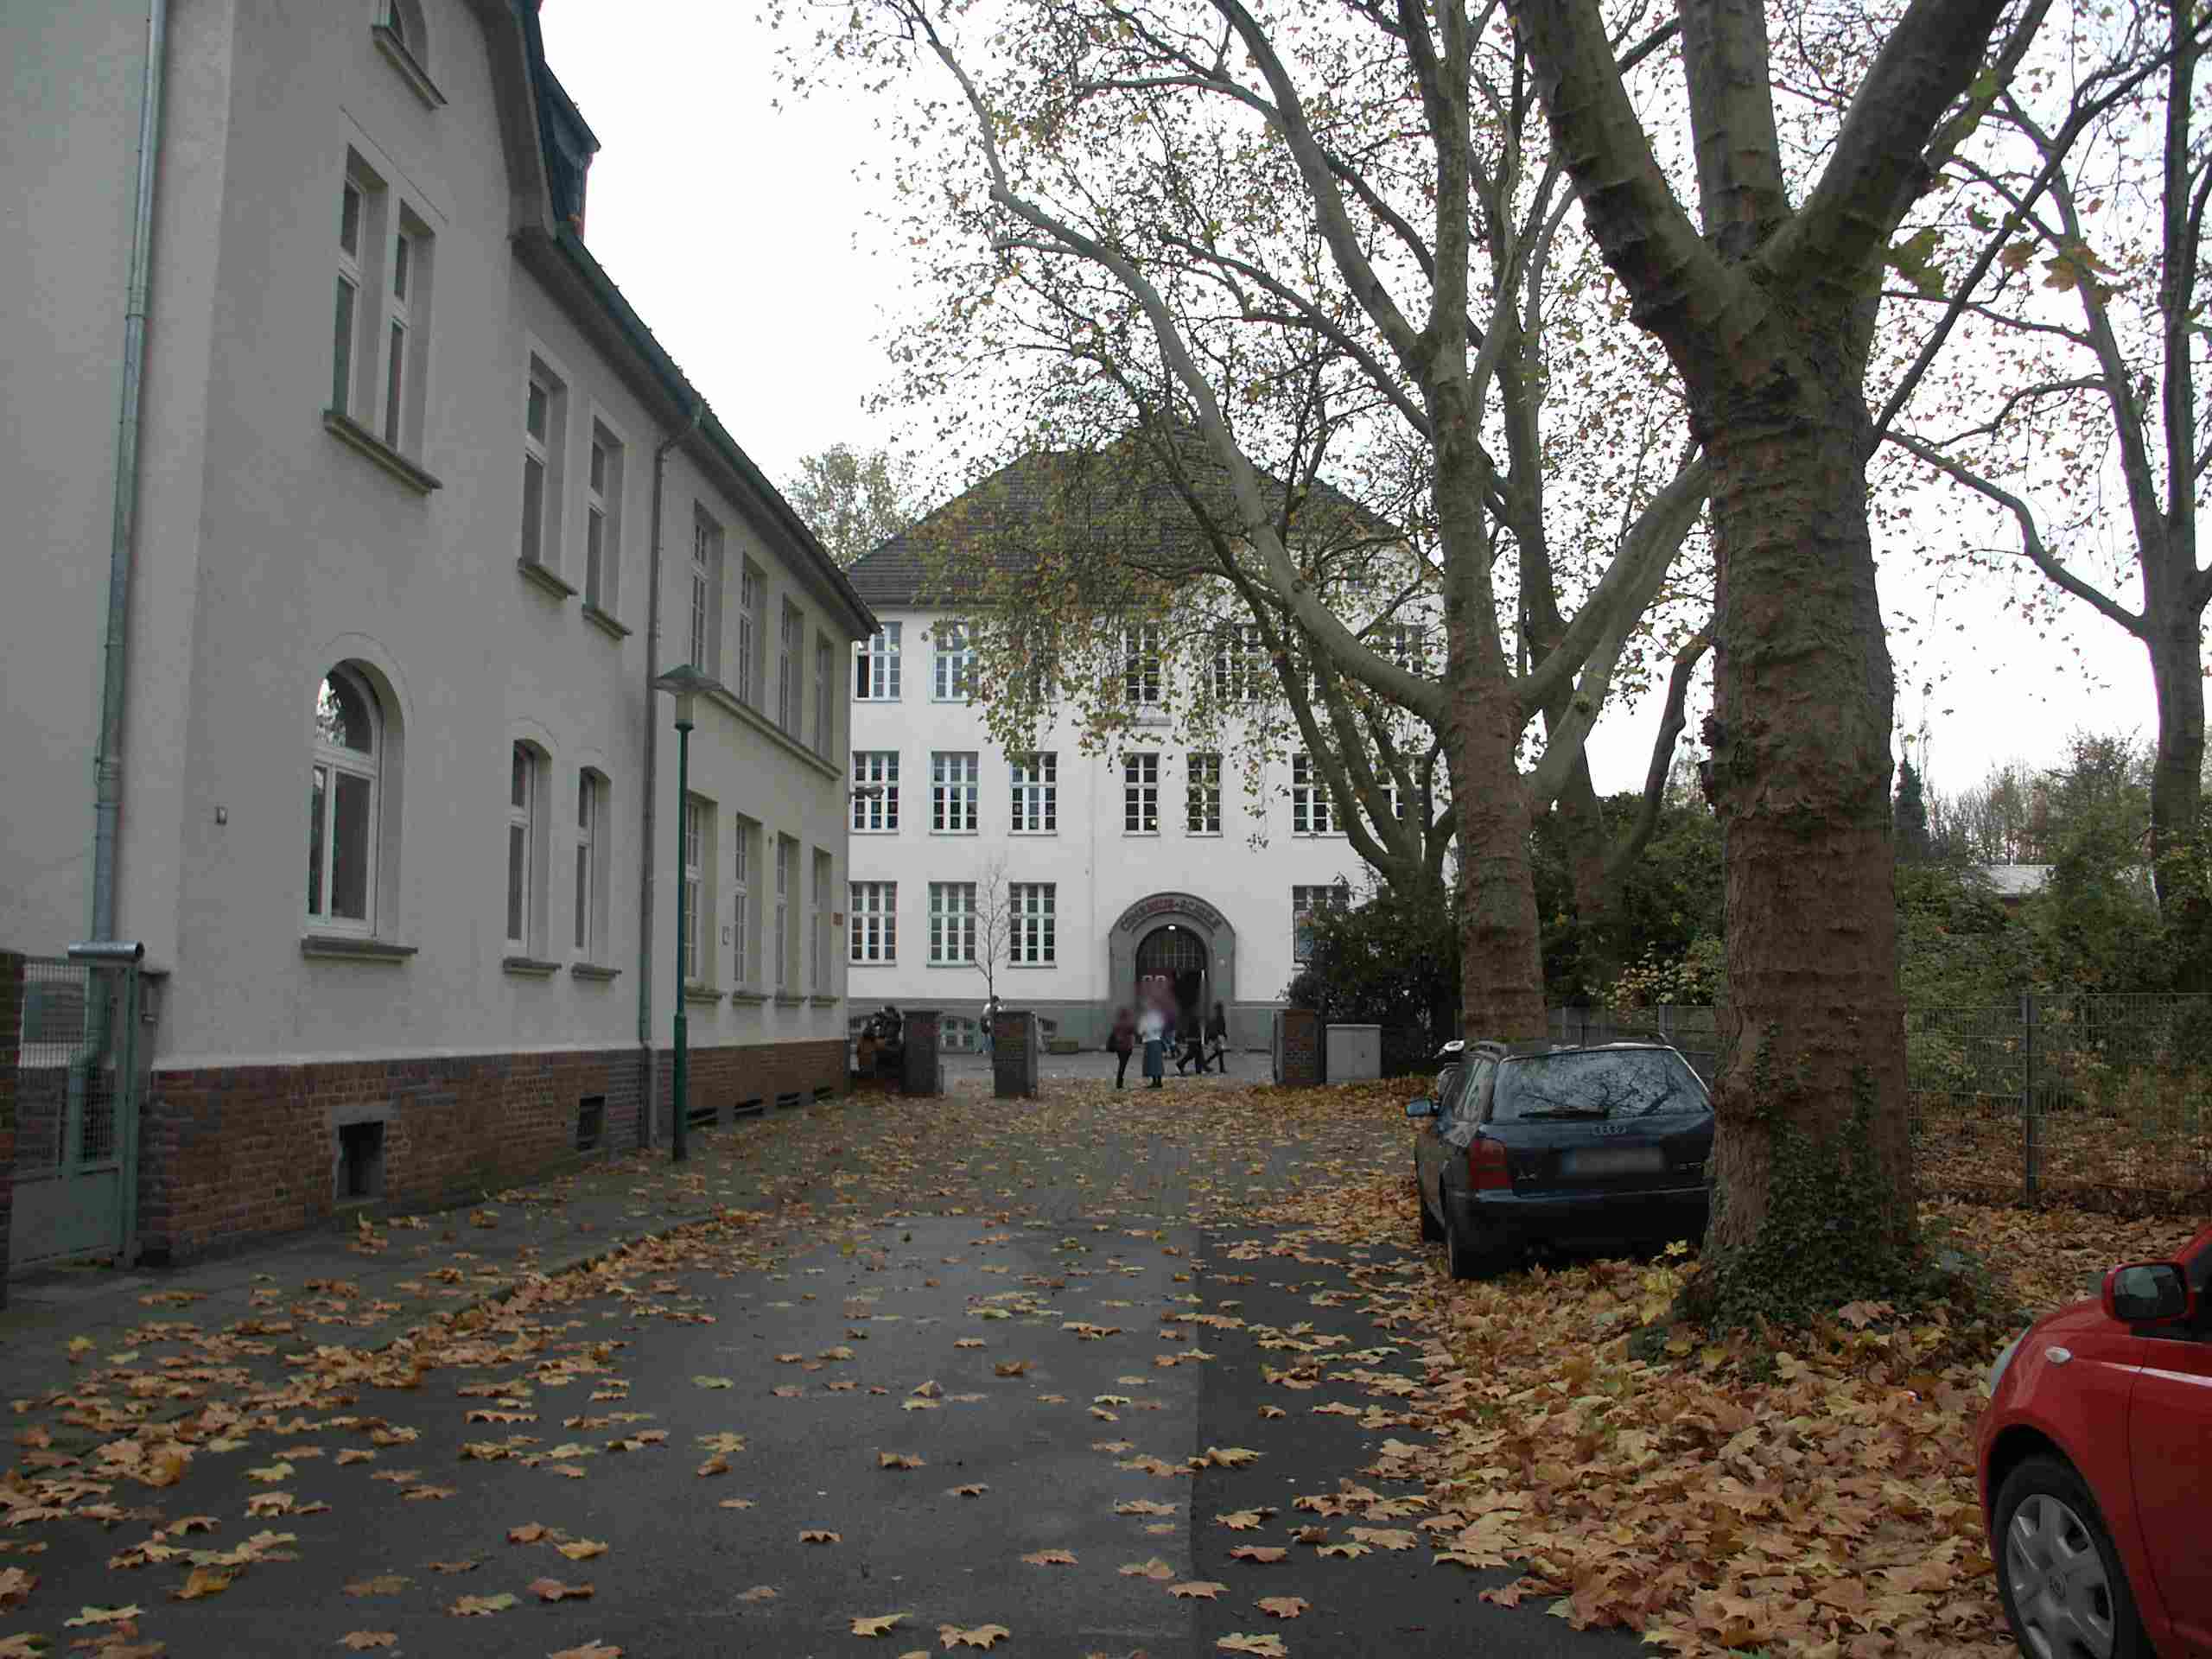 Comenius-Schule